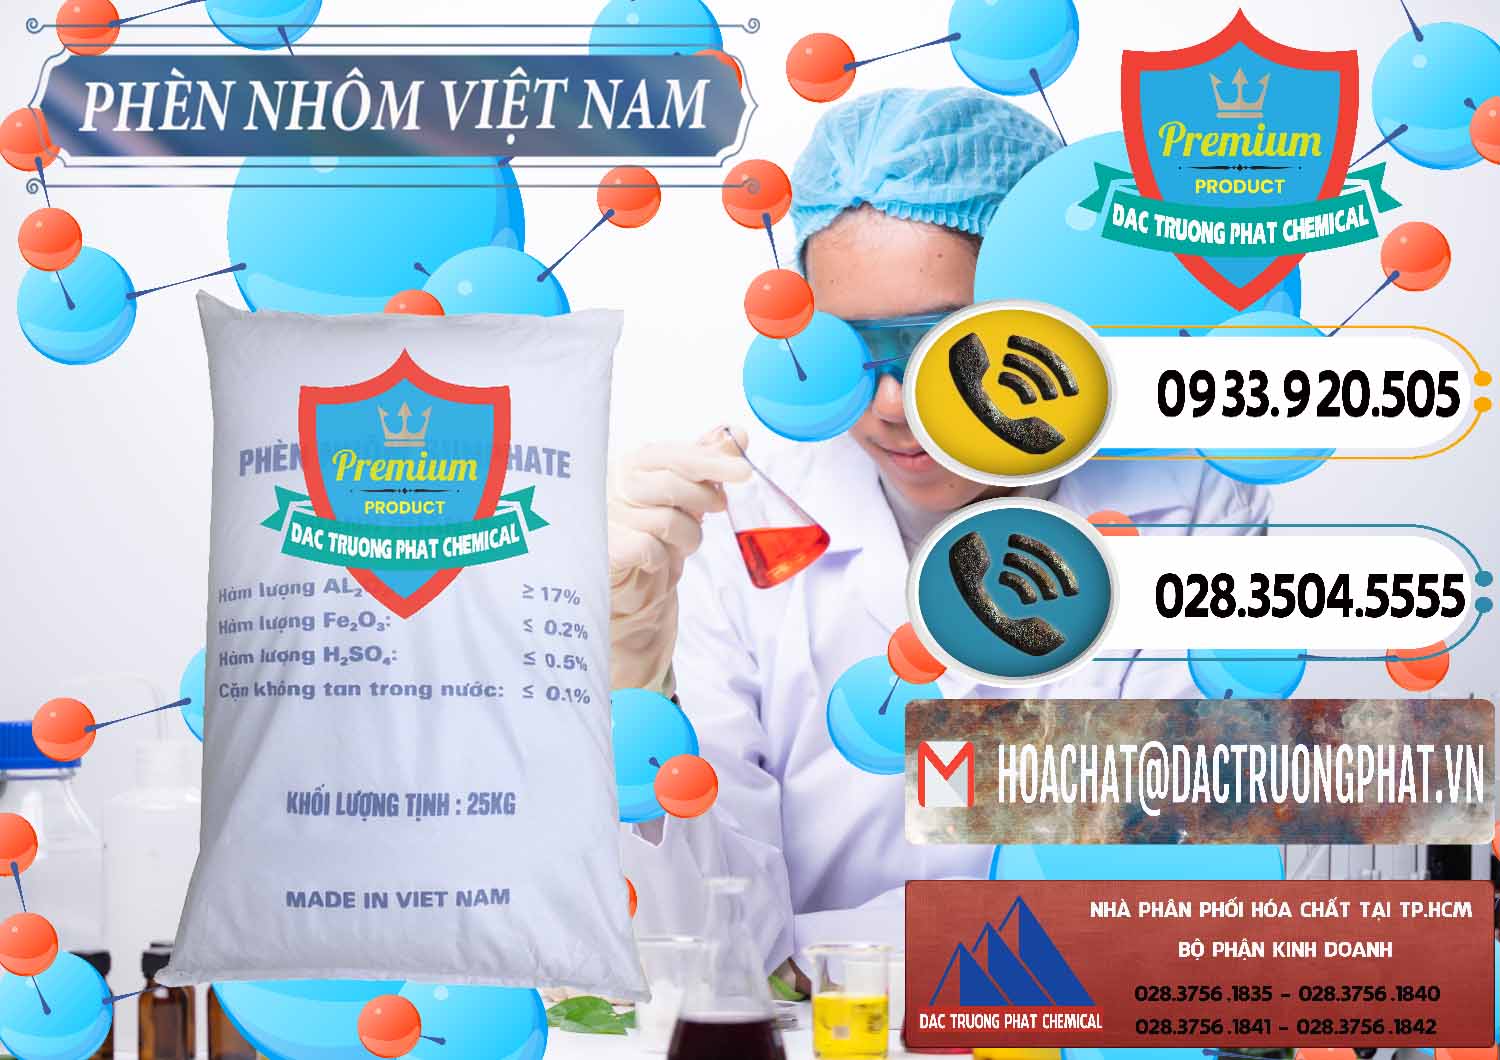 Cty chuyên phân phối và kinh doanh Phèn Nhôm - Al2(SO4)3 17% Việt Nam - 0465 - Cty kinh doanh và phân phối hóa chất tại TP.HCM - hoachatdetnhuom.vn